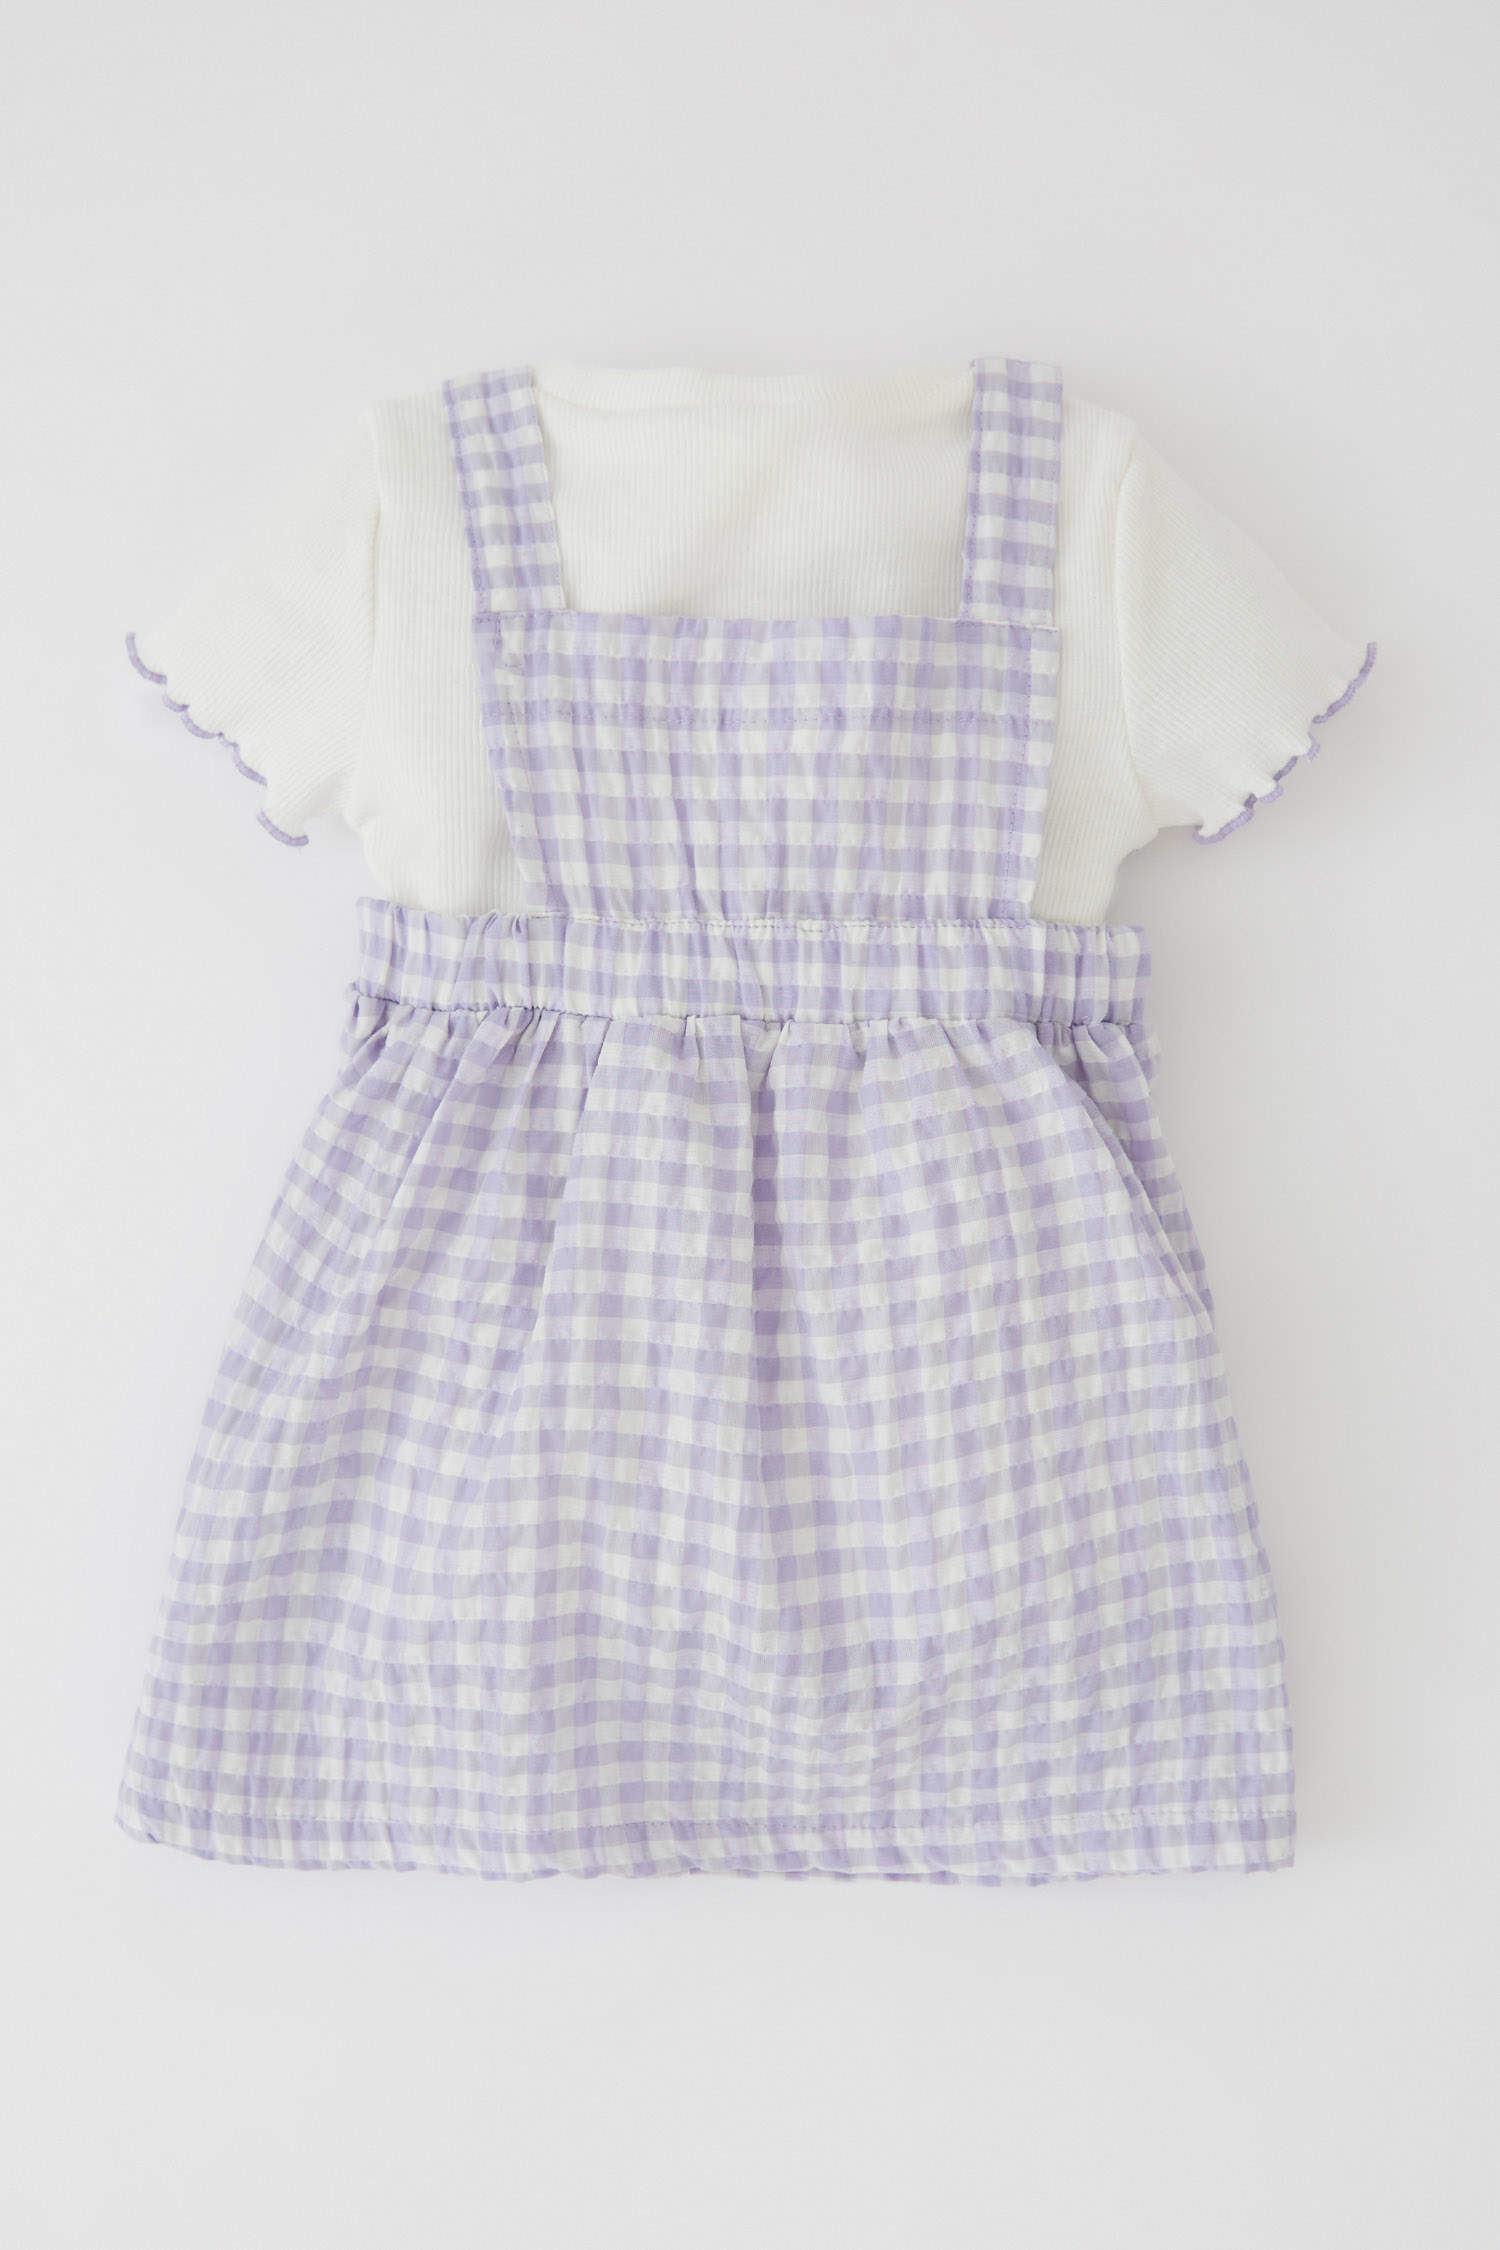 Defacto Kız Bebek Kısa Kollu Tişört Pötikare Desenli Askılı Elbise Takım. 5